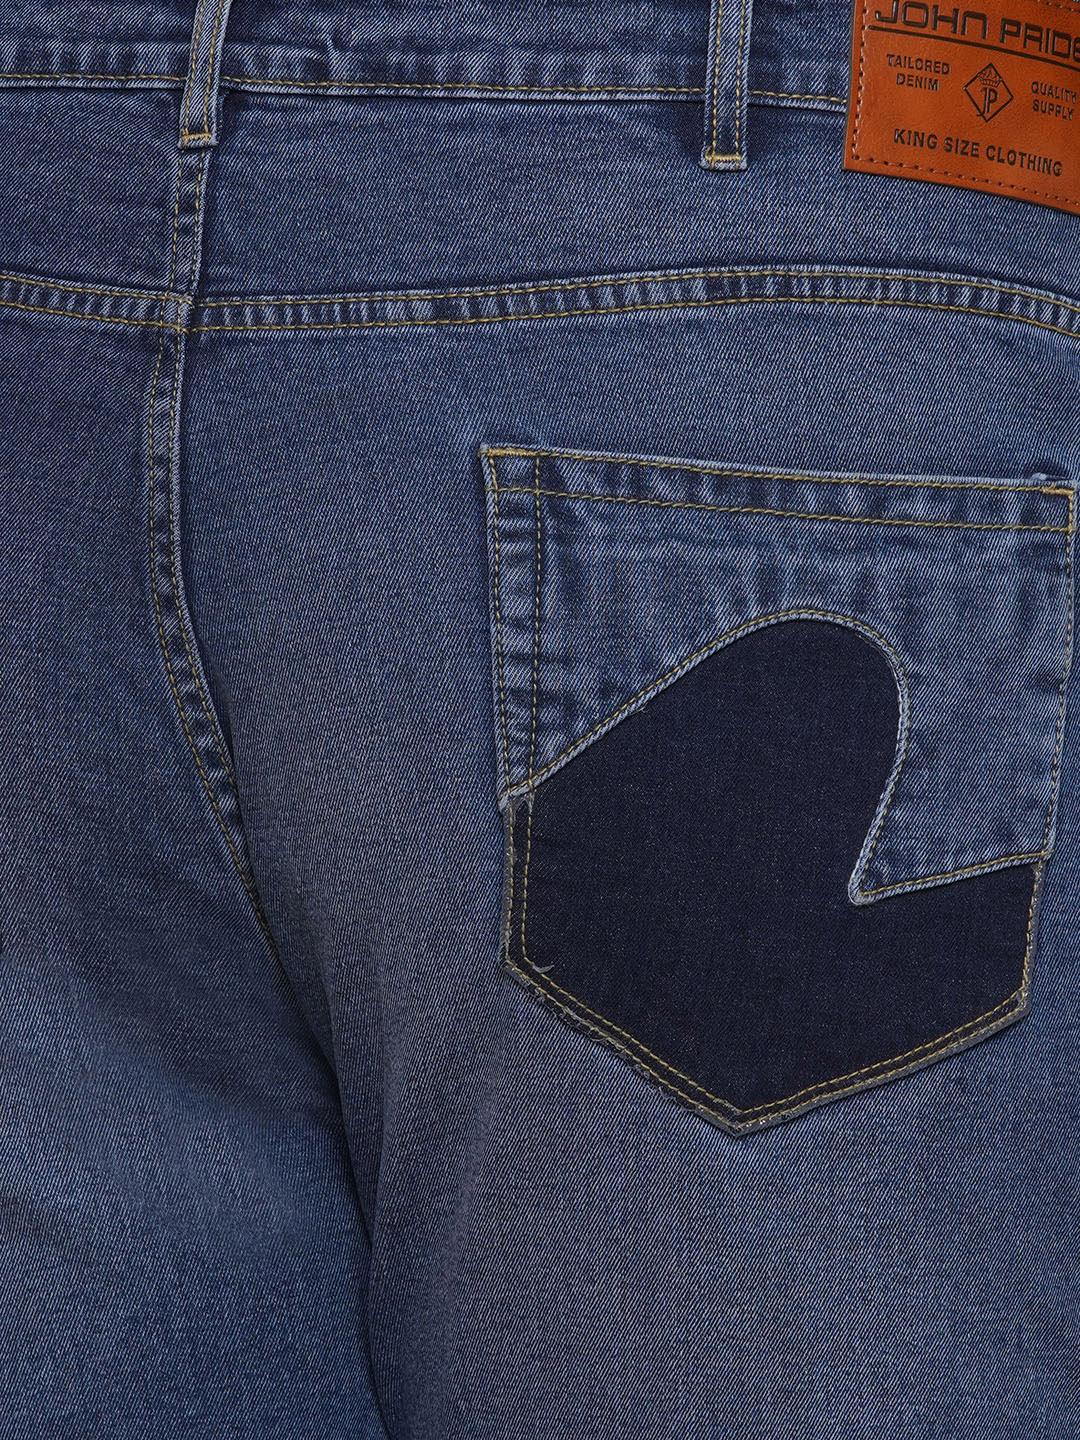 bottomwear/jeans/EJPJ25084/ejpj25084-2.jpg